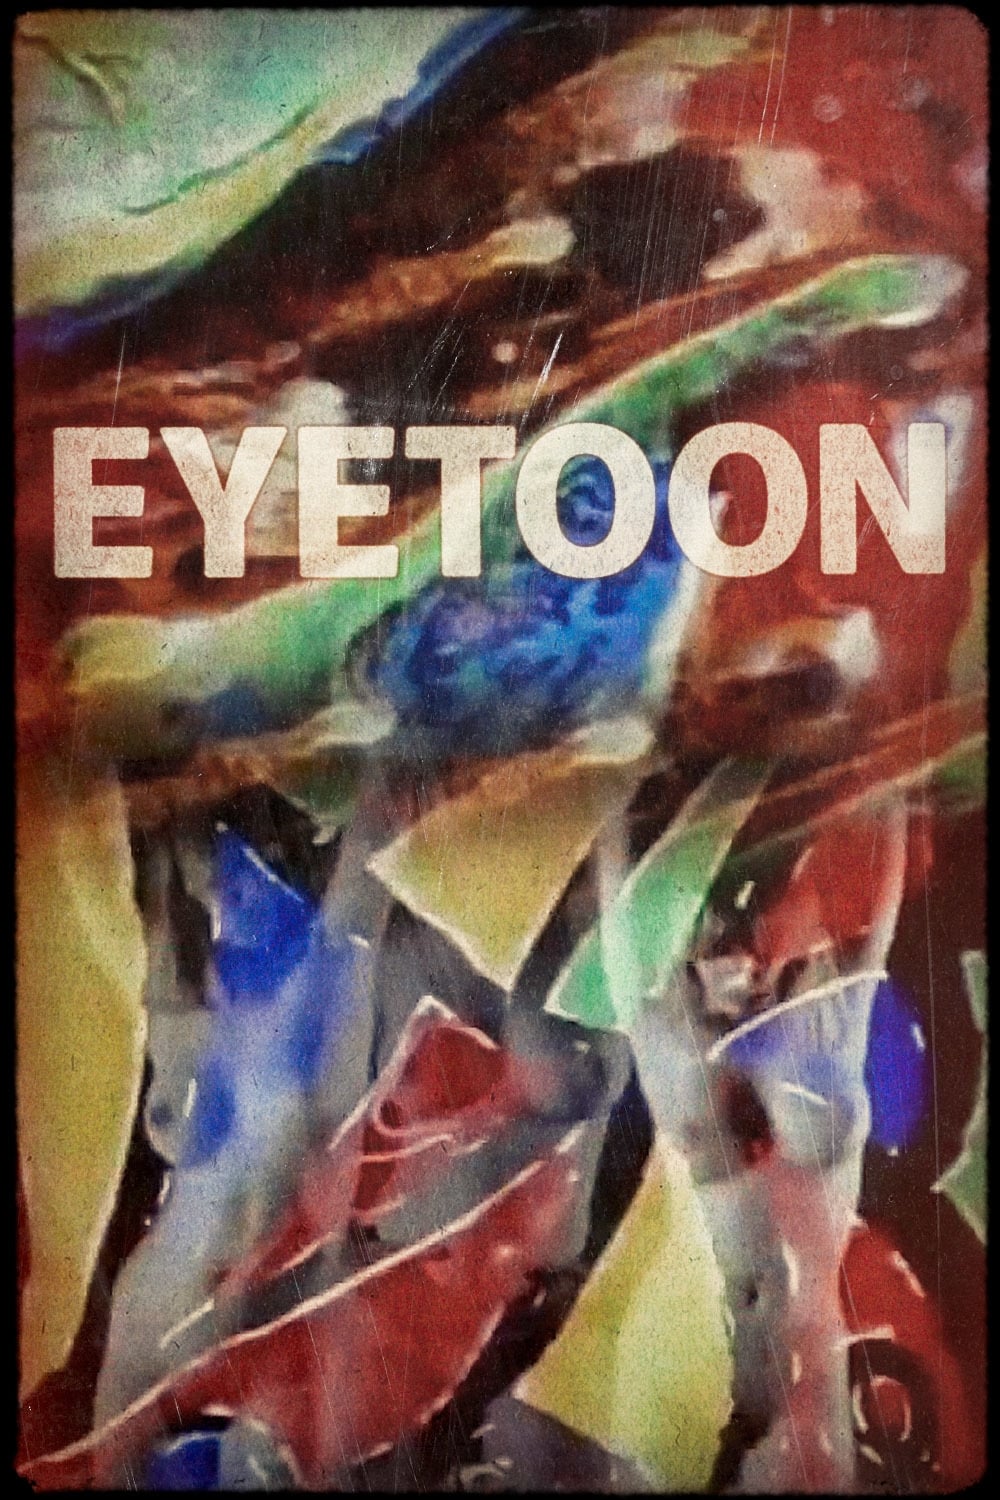 Eyetoon